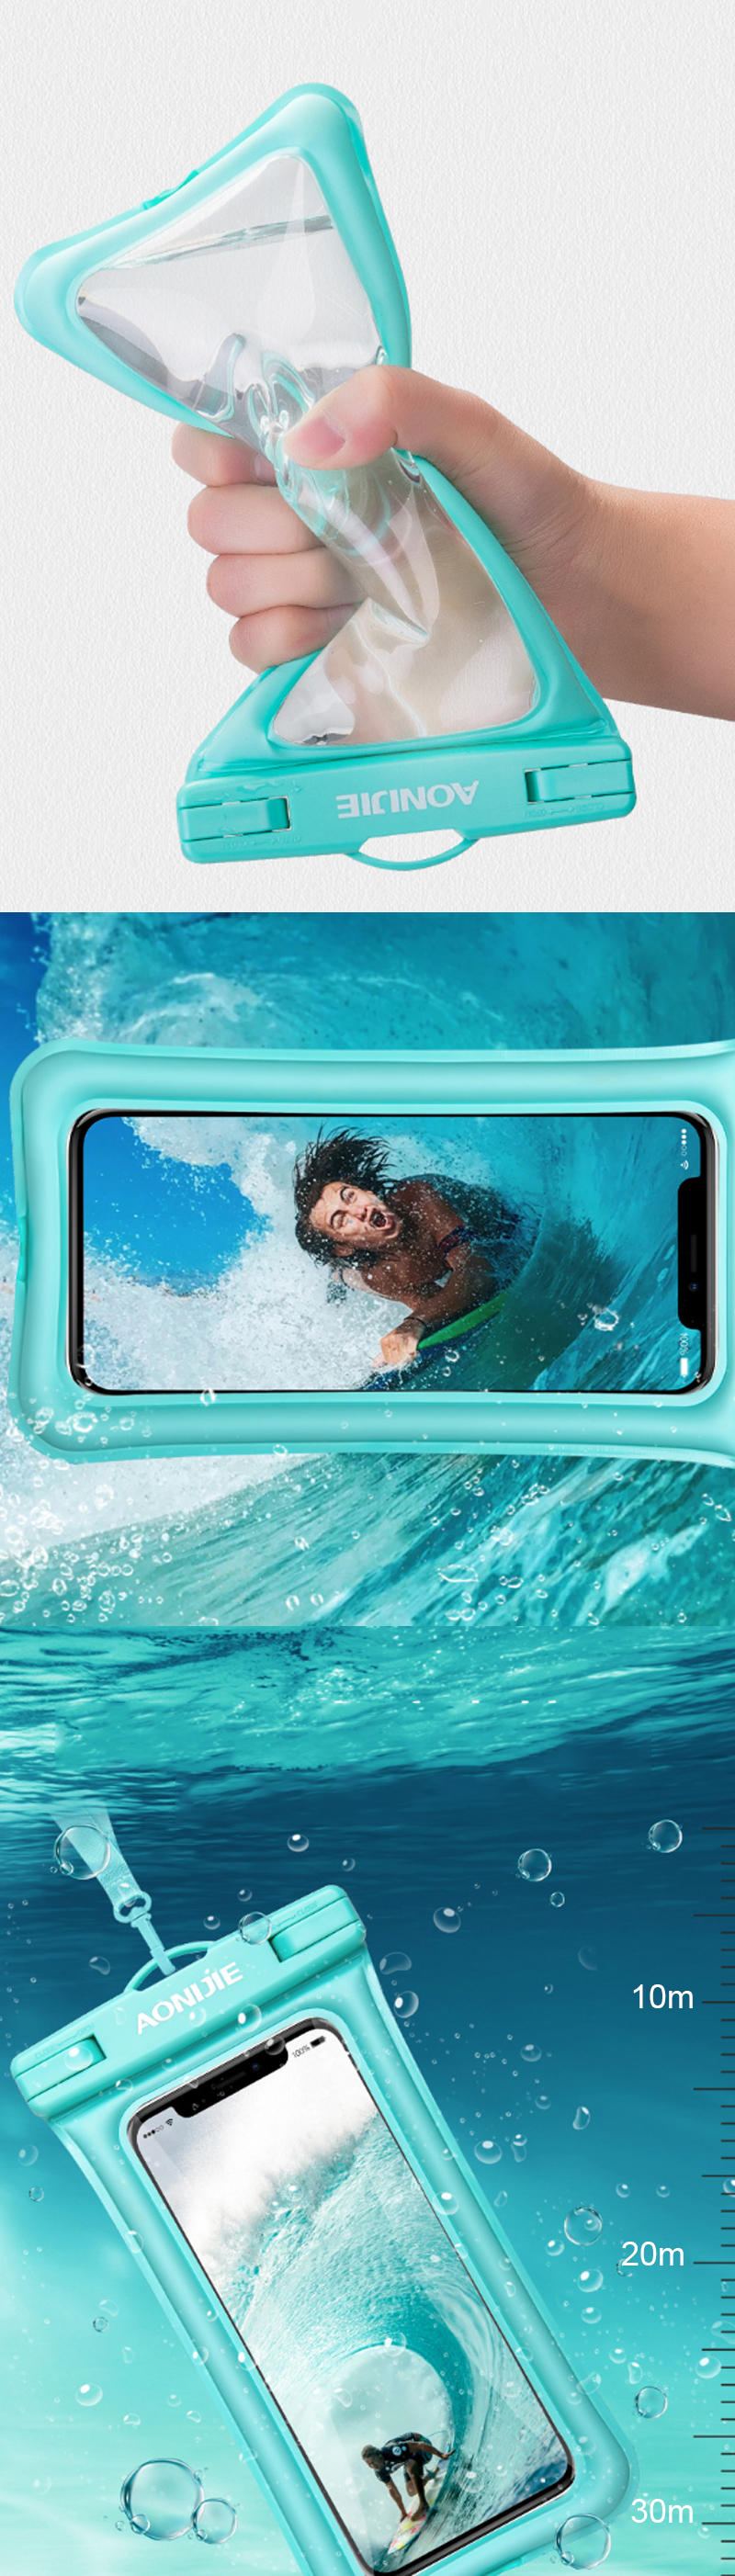 Vodotěsná Brašna Na Telefon Aonijie E4104 S Dotykovou Obrazovkou 30 M Pod Vodou Pro Iphone Huawei Samsung